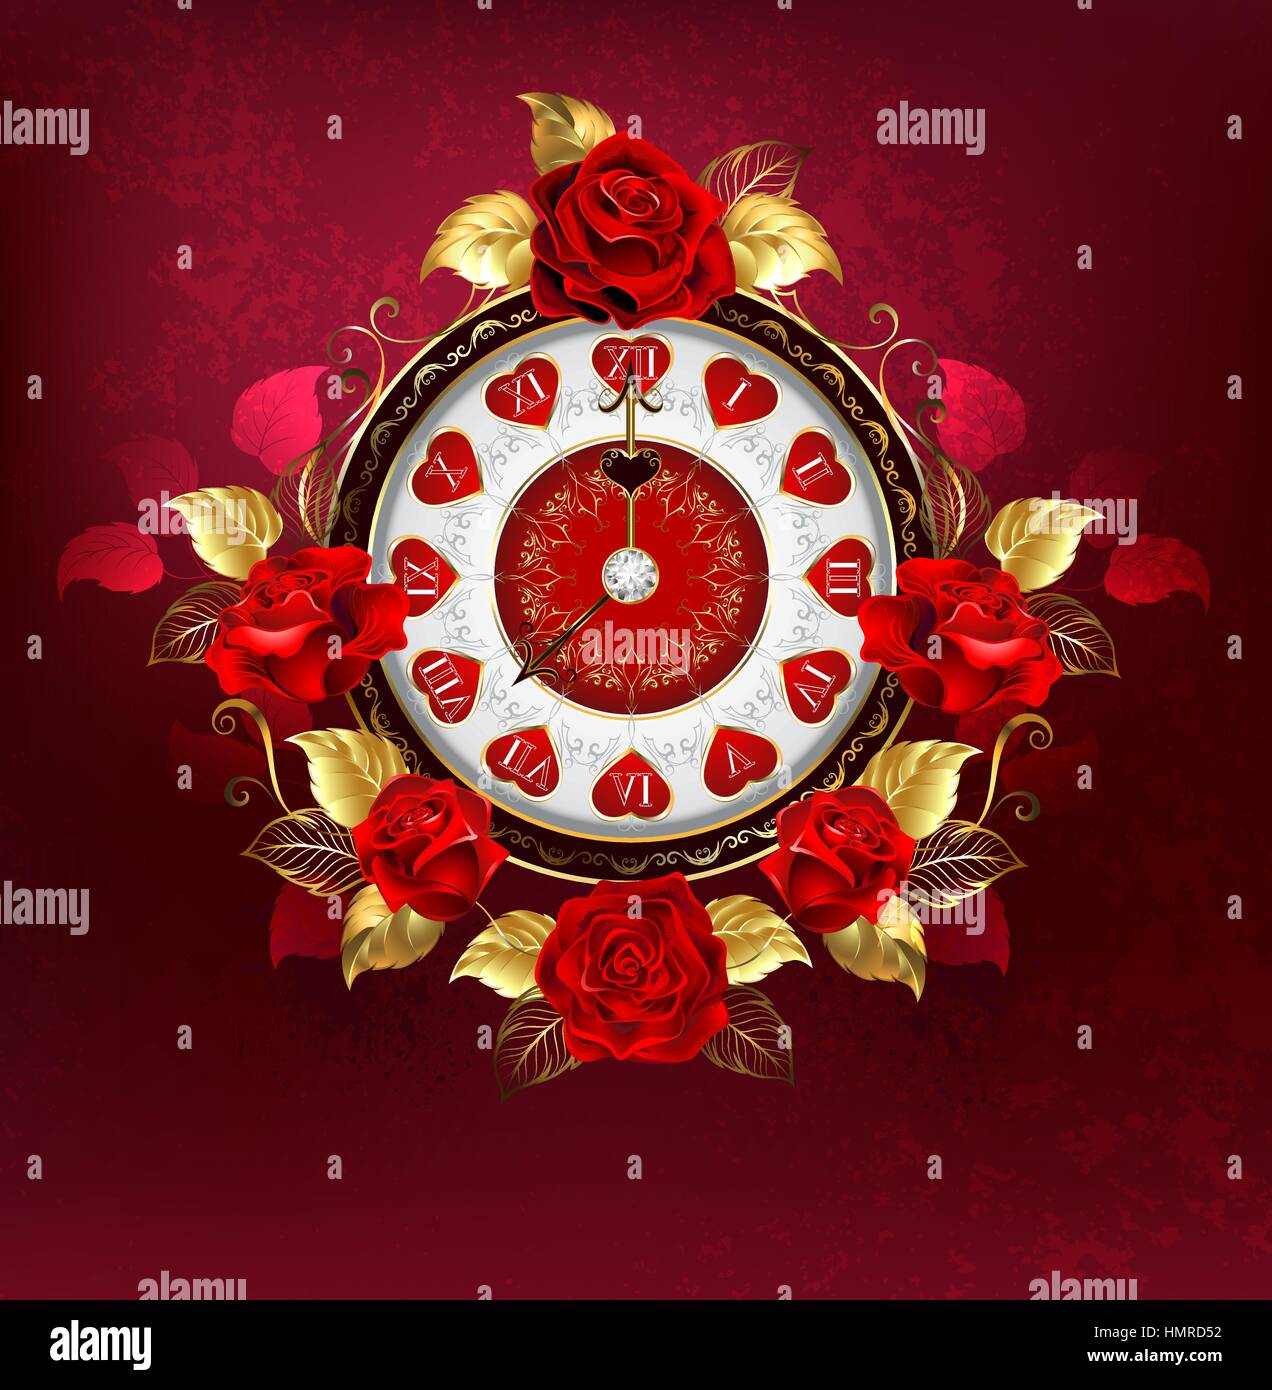 Gold, Schmuck, Uhren, Schmuck mit roten Rosen und goldenen auf rotem Grund verlässt. Design mit Rosen. Steampunk-Stil. Antike Uhr. Stock Vektor